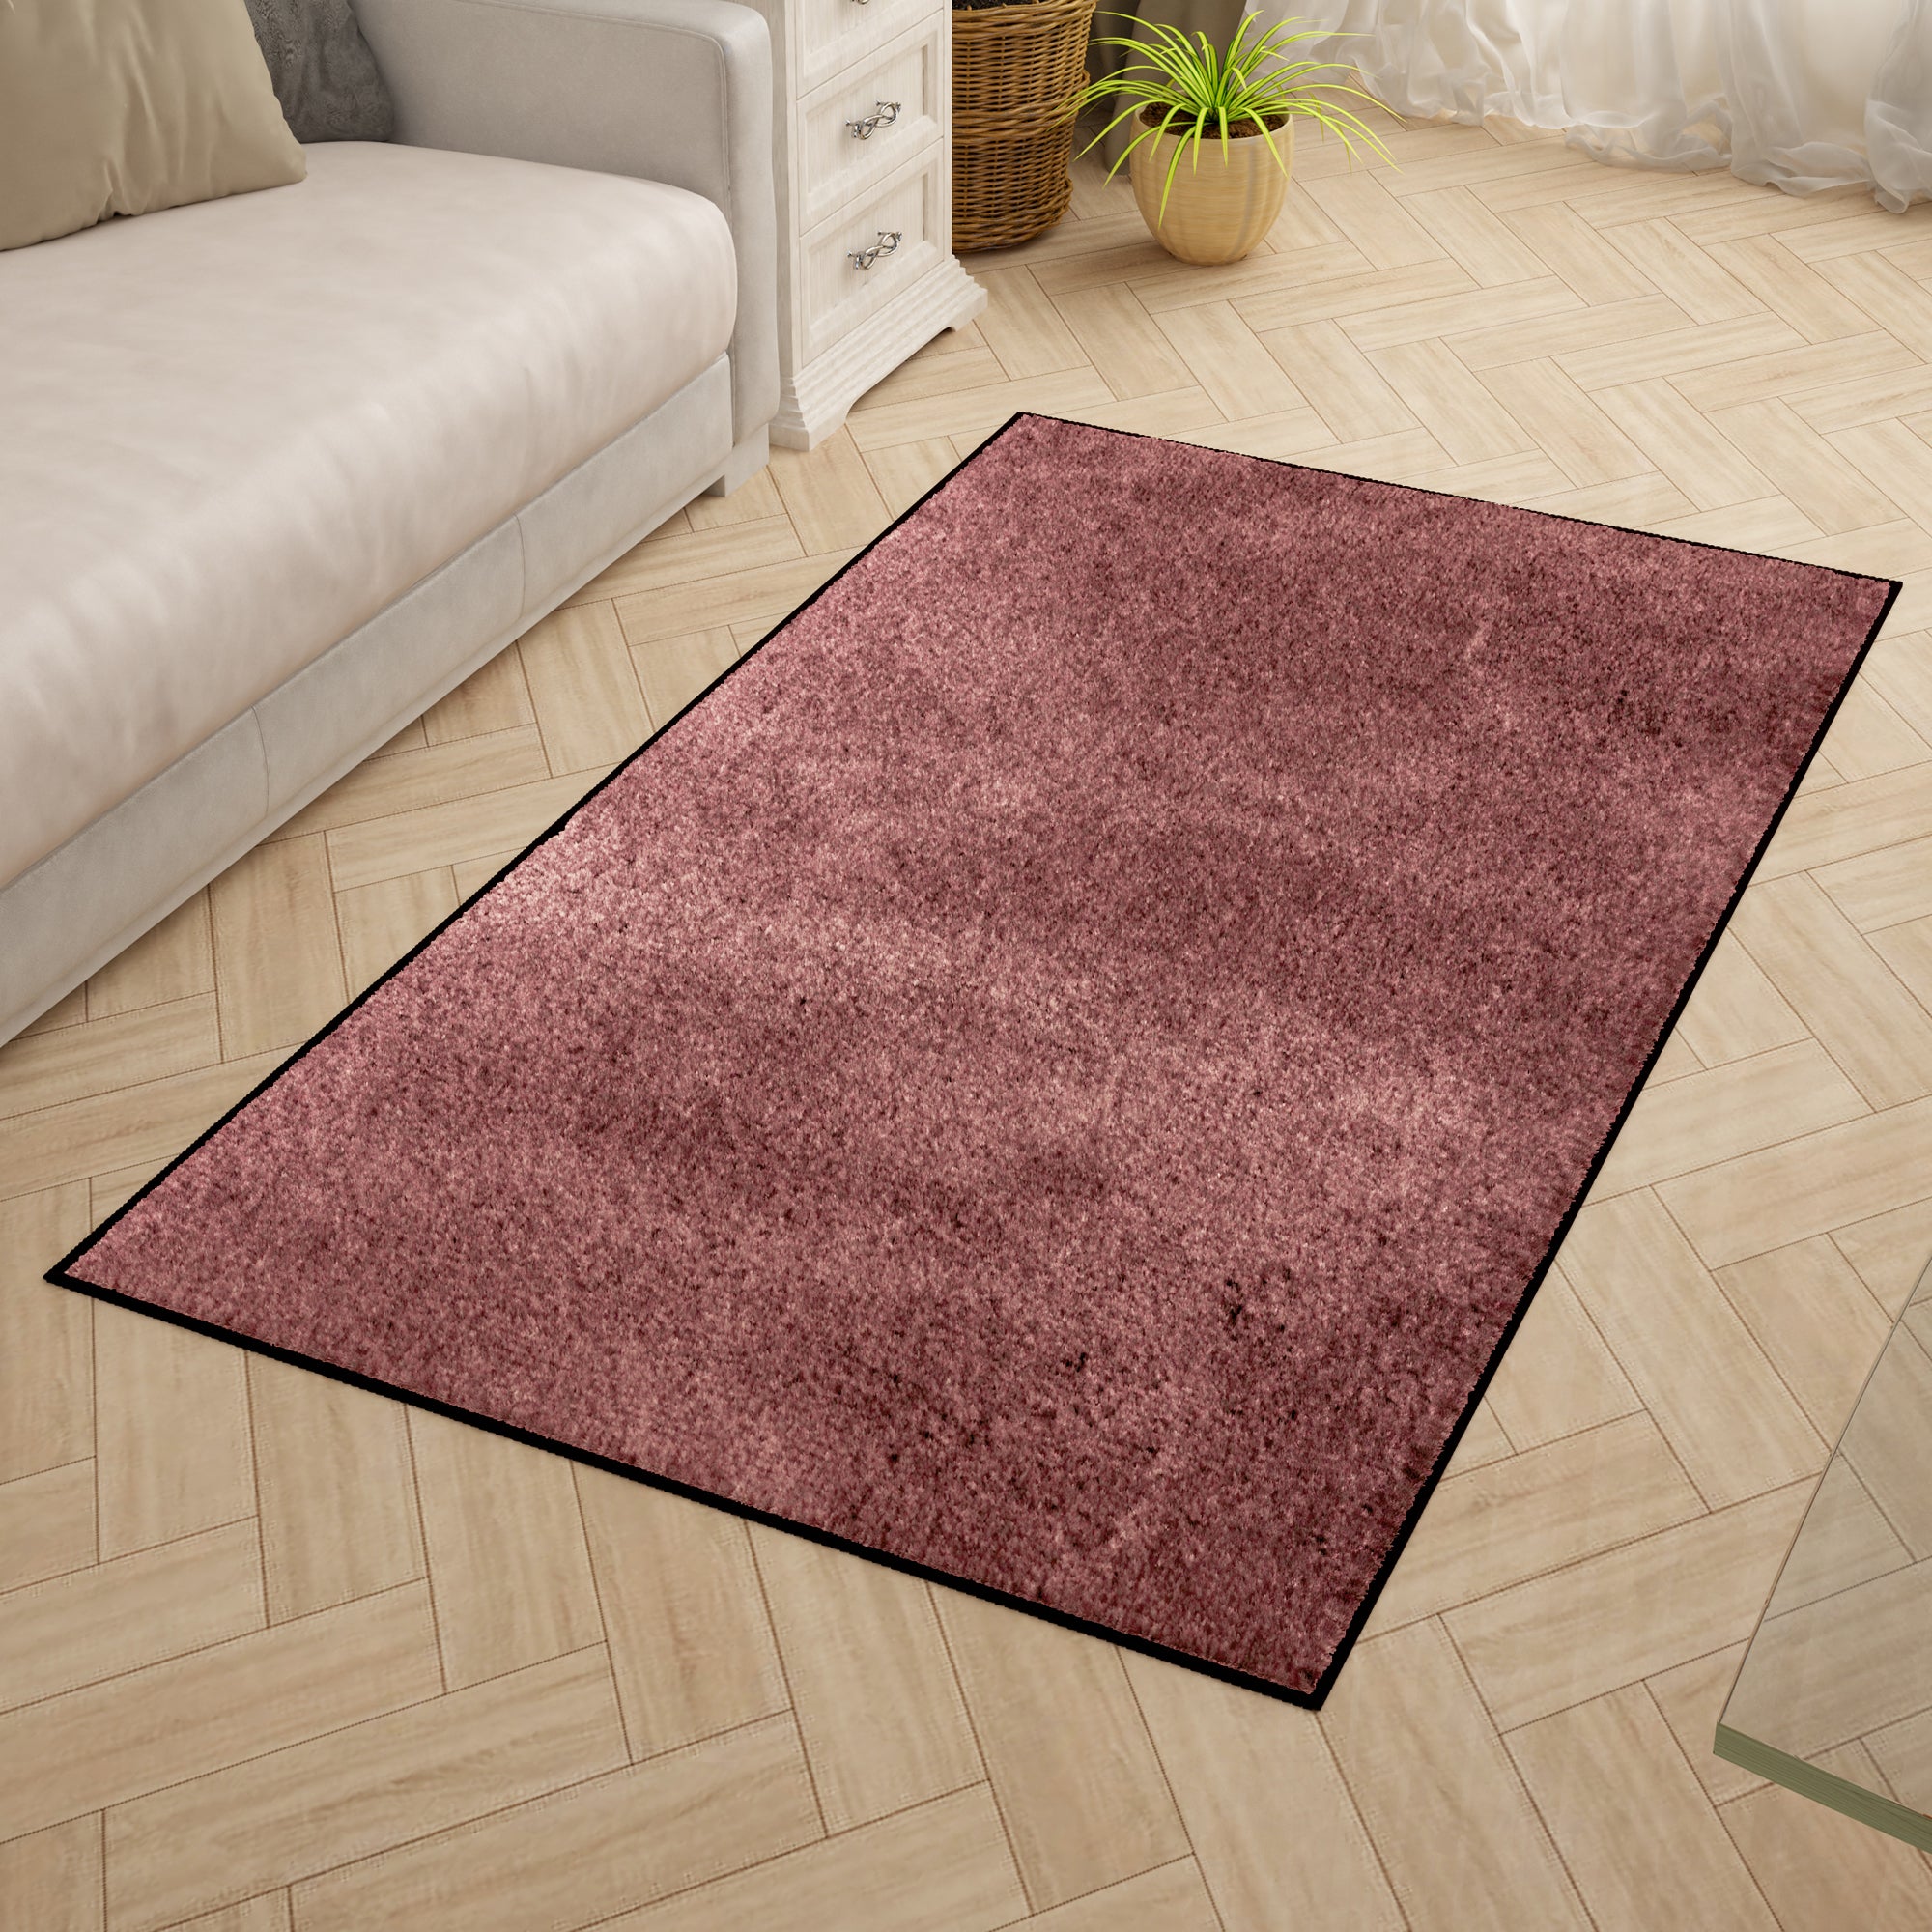 Solid Pattern Light Burgundy Carpet for Living Room & Bedroom